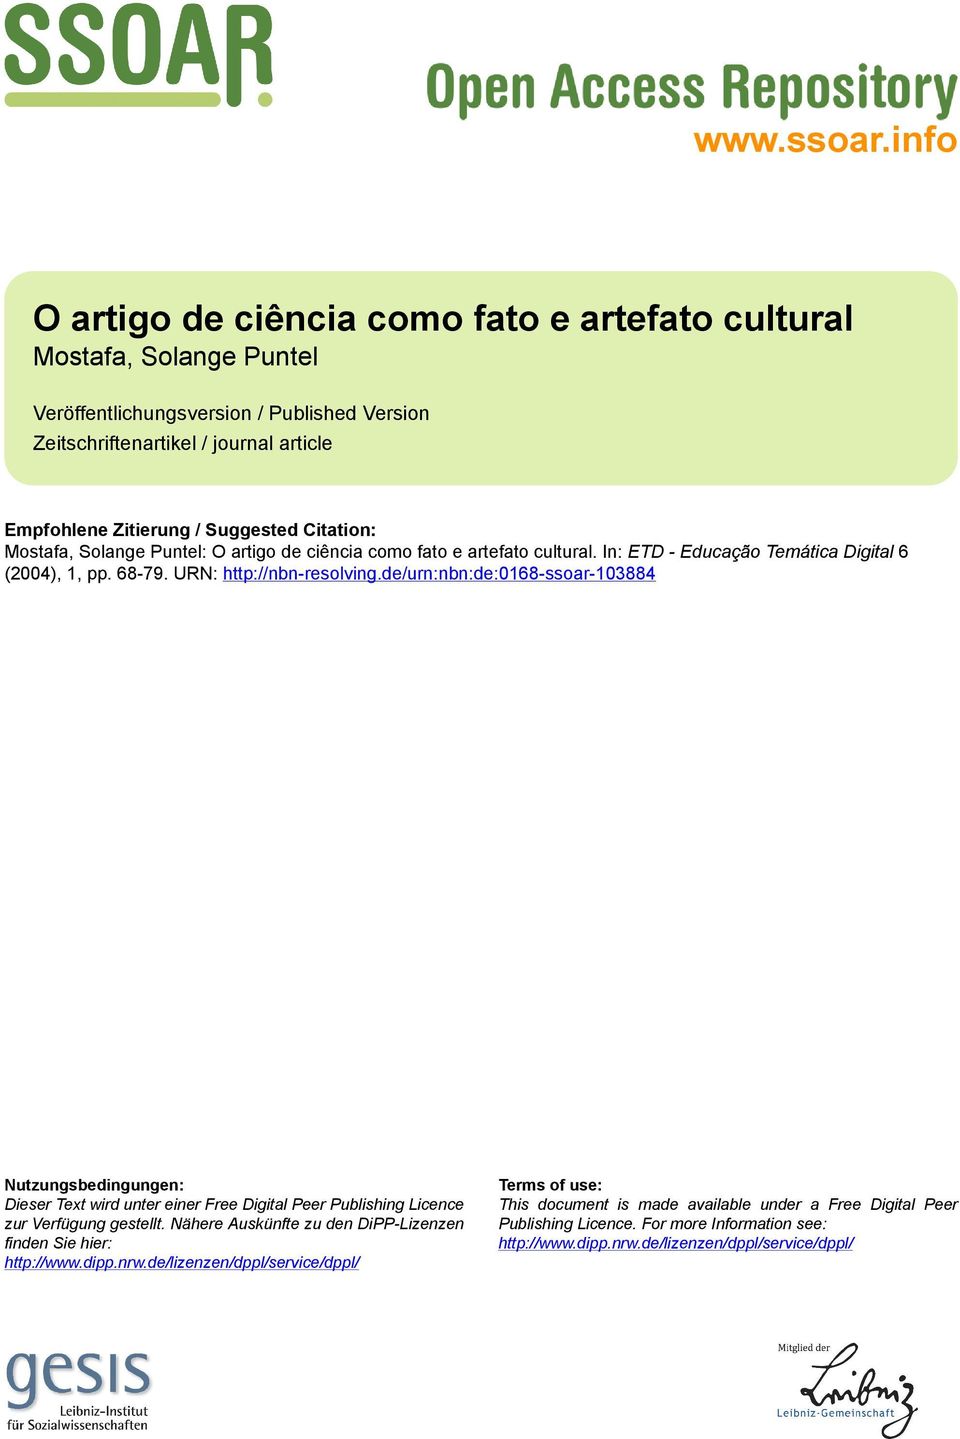 Citation: Mostafa, Solange Puntel: O artigo de ciência como fato e artefato cultural. In: ETD - Educação Temática Digital 6 (2004), 1, pp. 68-79. URN: http://nbn-resolving.